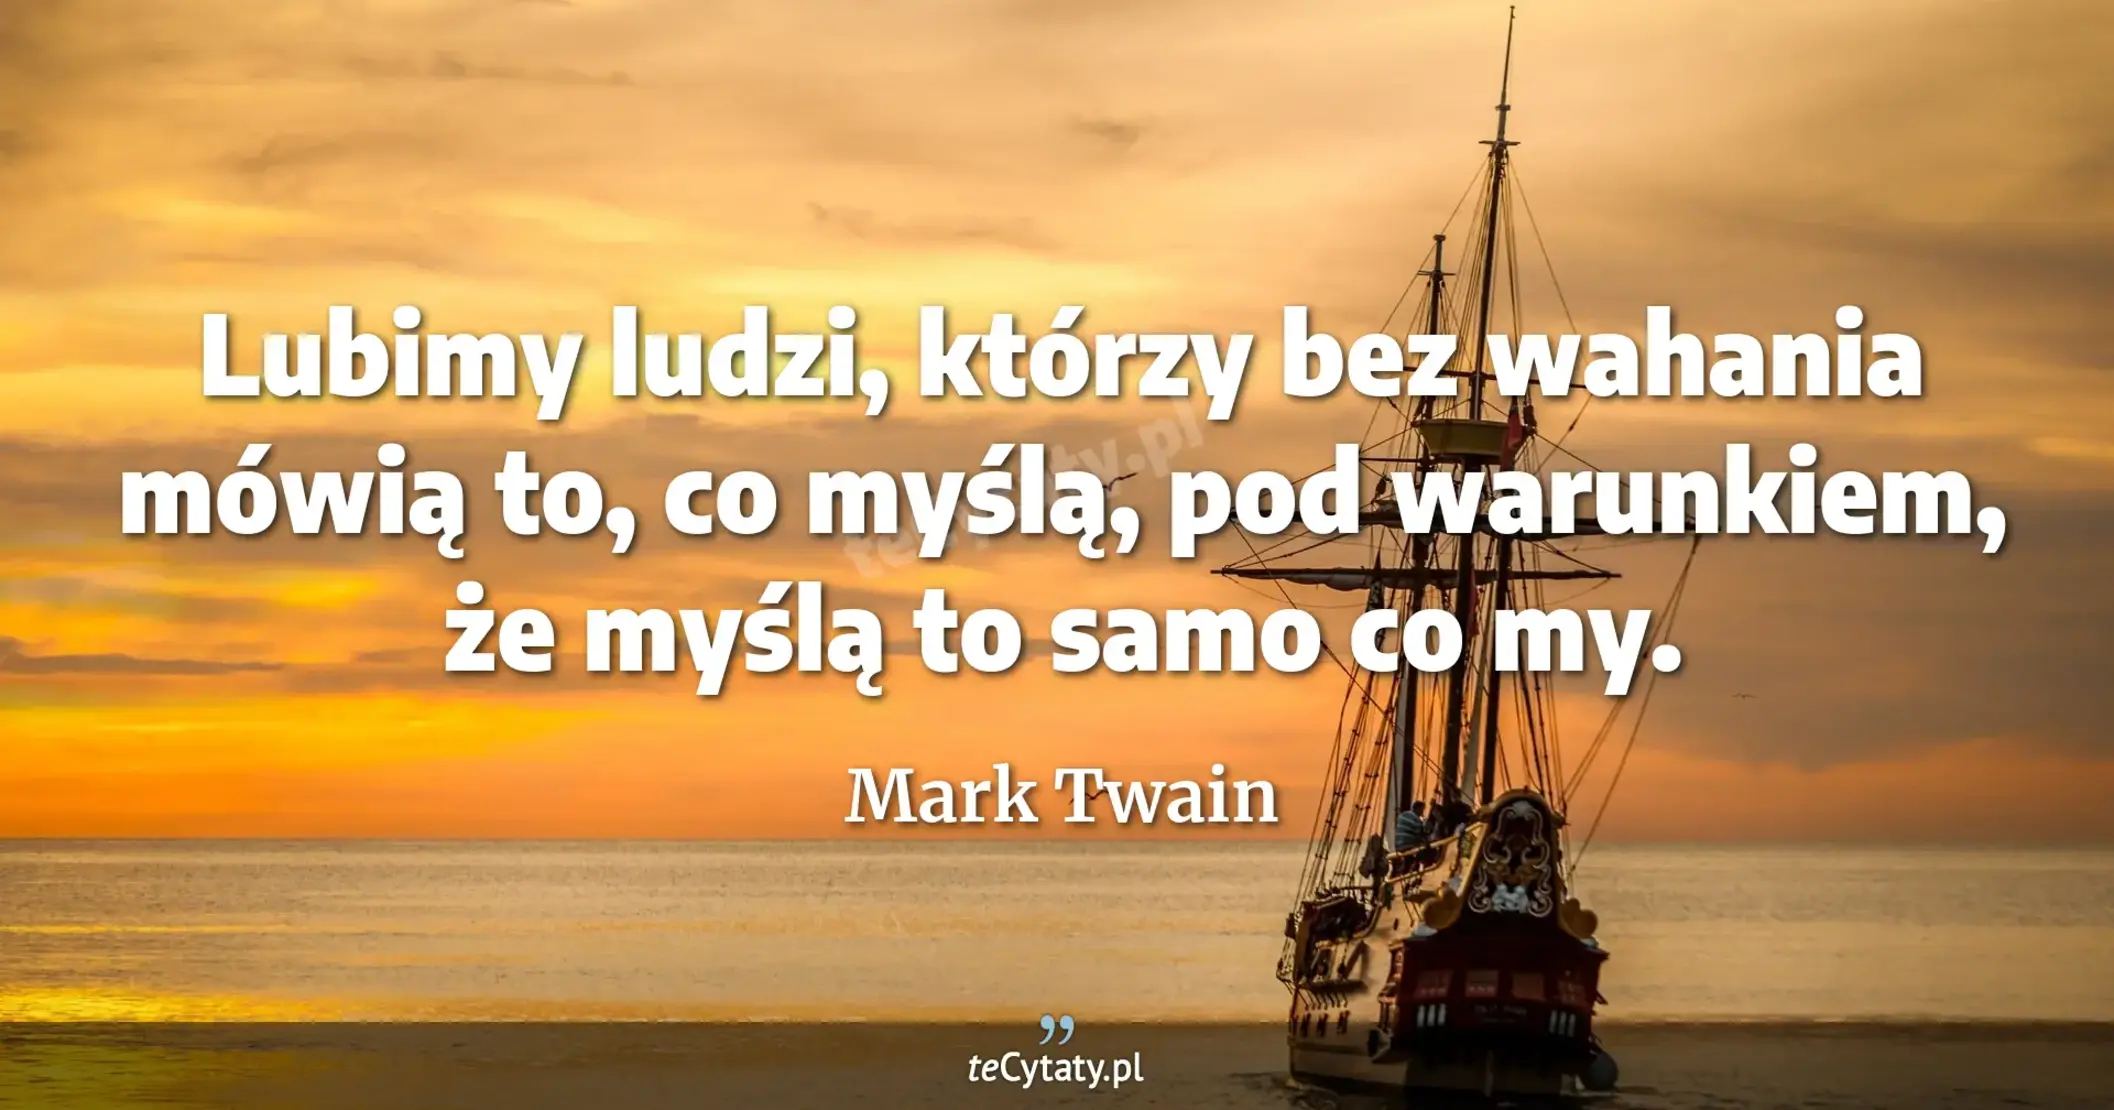 Lubimy ludzi, którzy bez wahania mówią to, co myślą, pod warunkiem, że myślą to samo co my. - Mark Twain